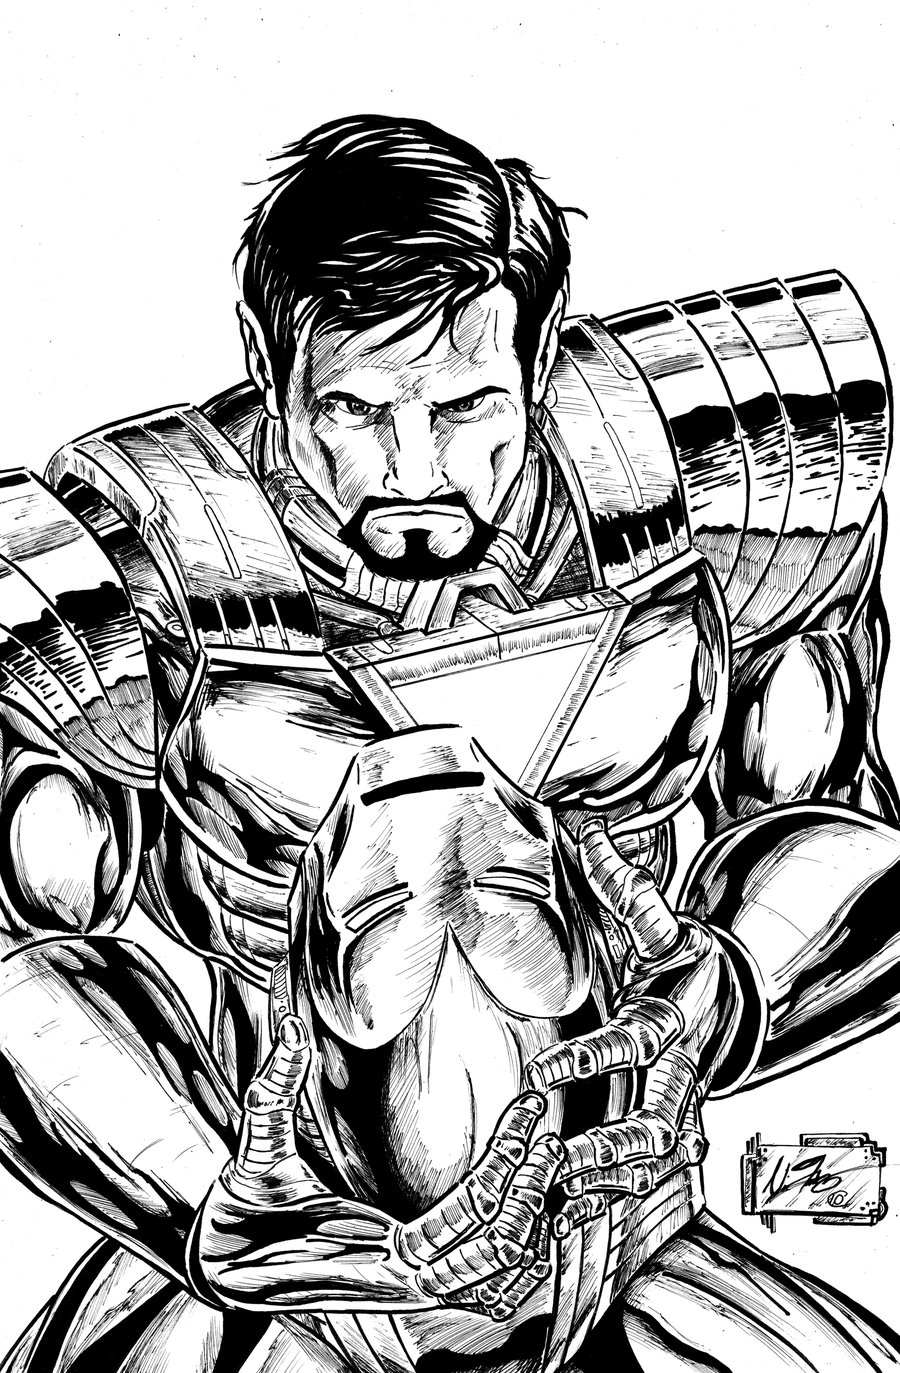 Tony Stark le richissime homme d'affaire devenu ... Iron Man !